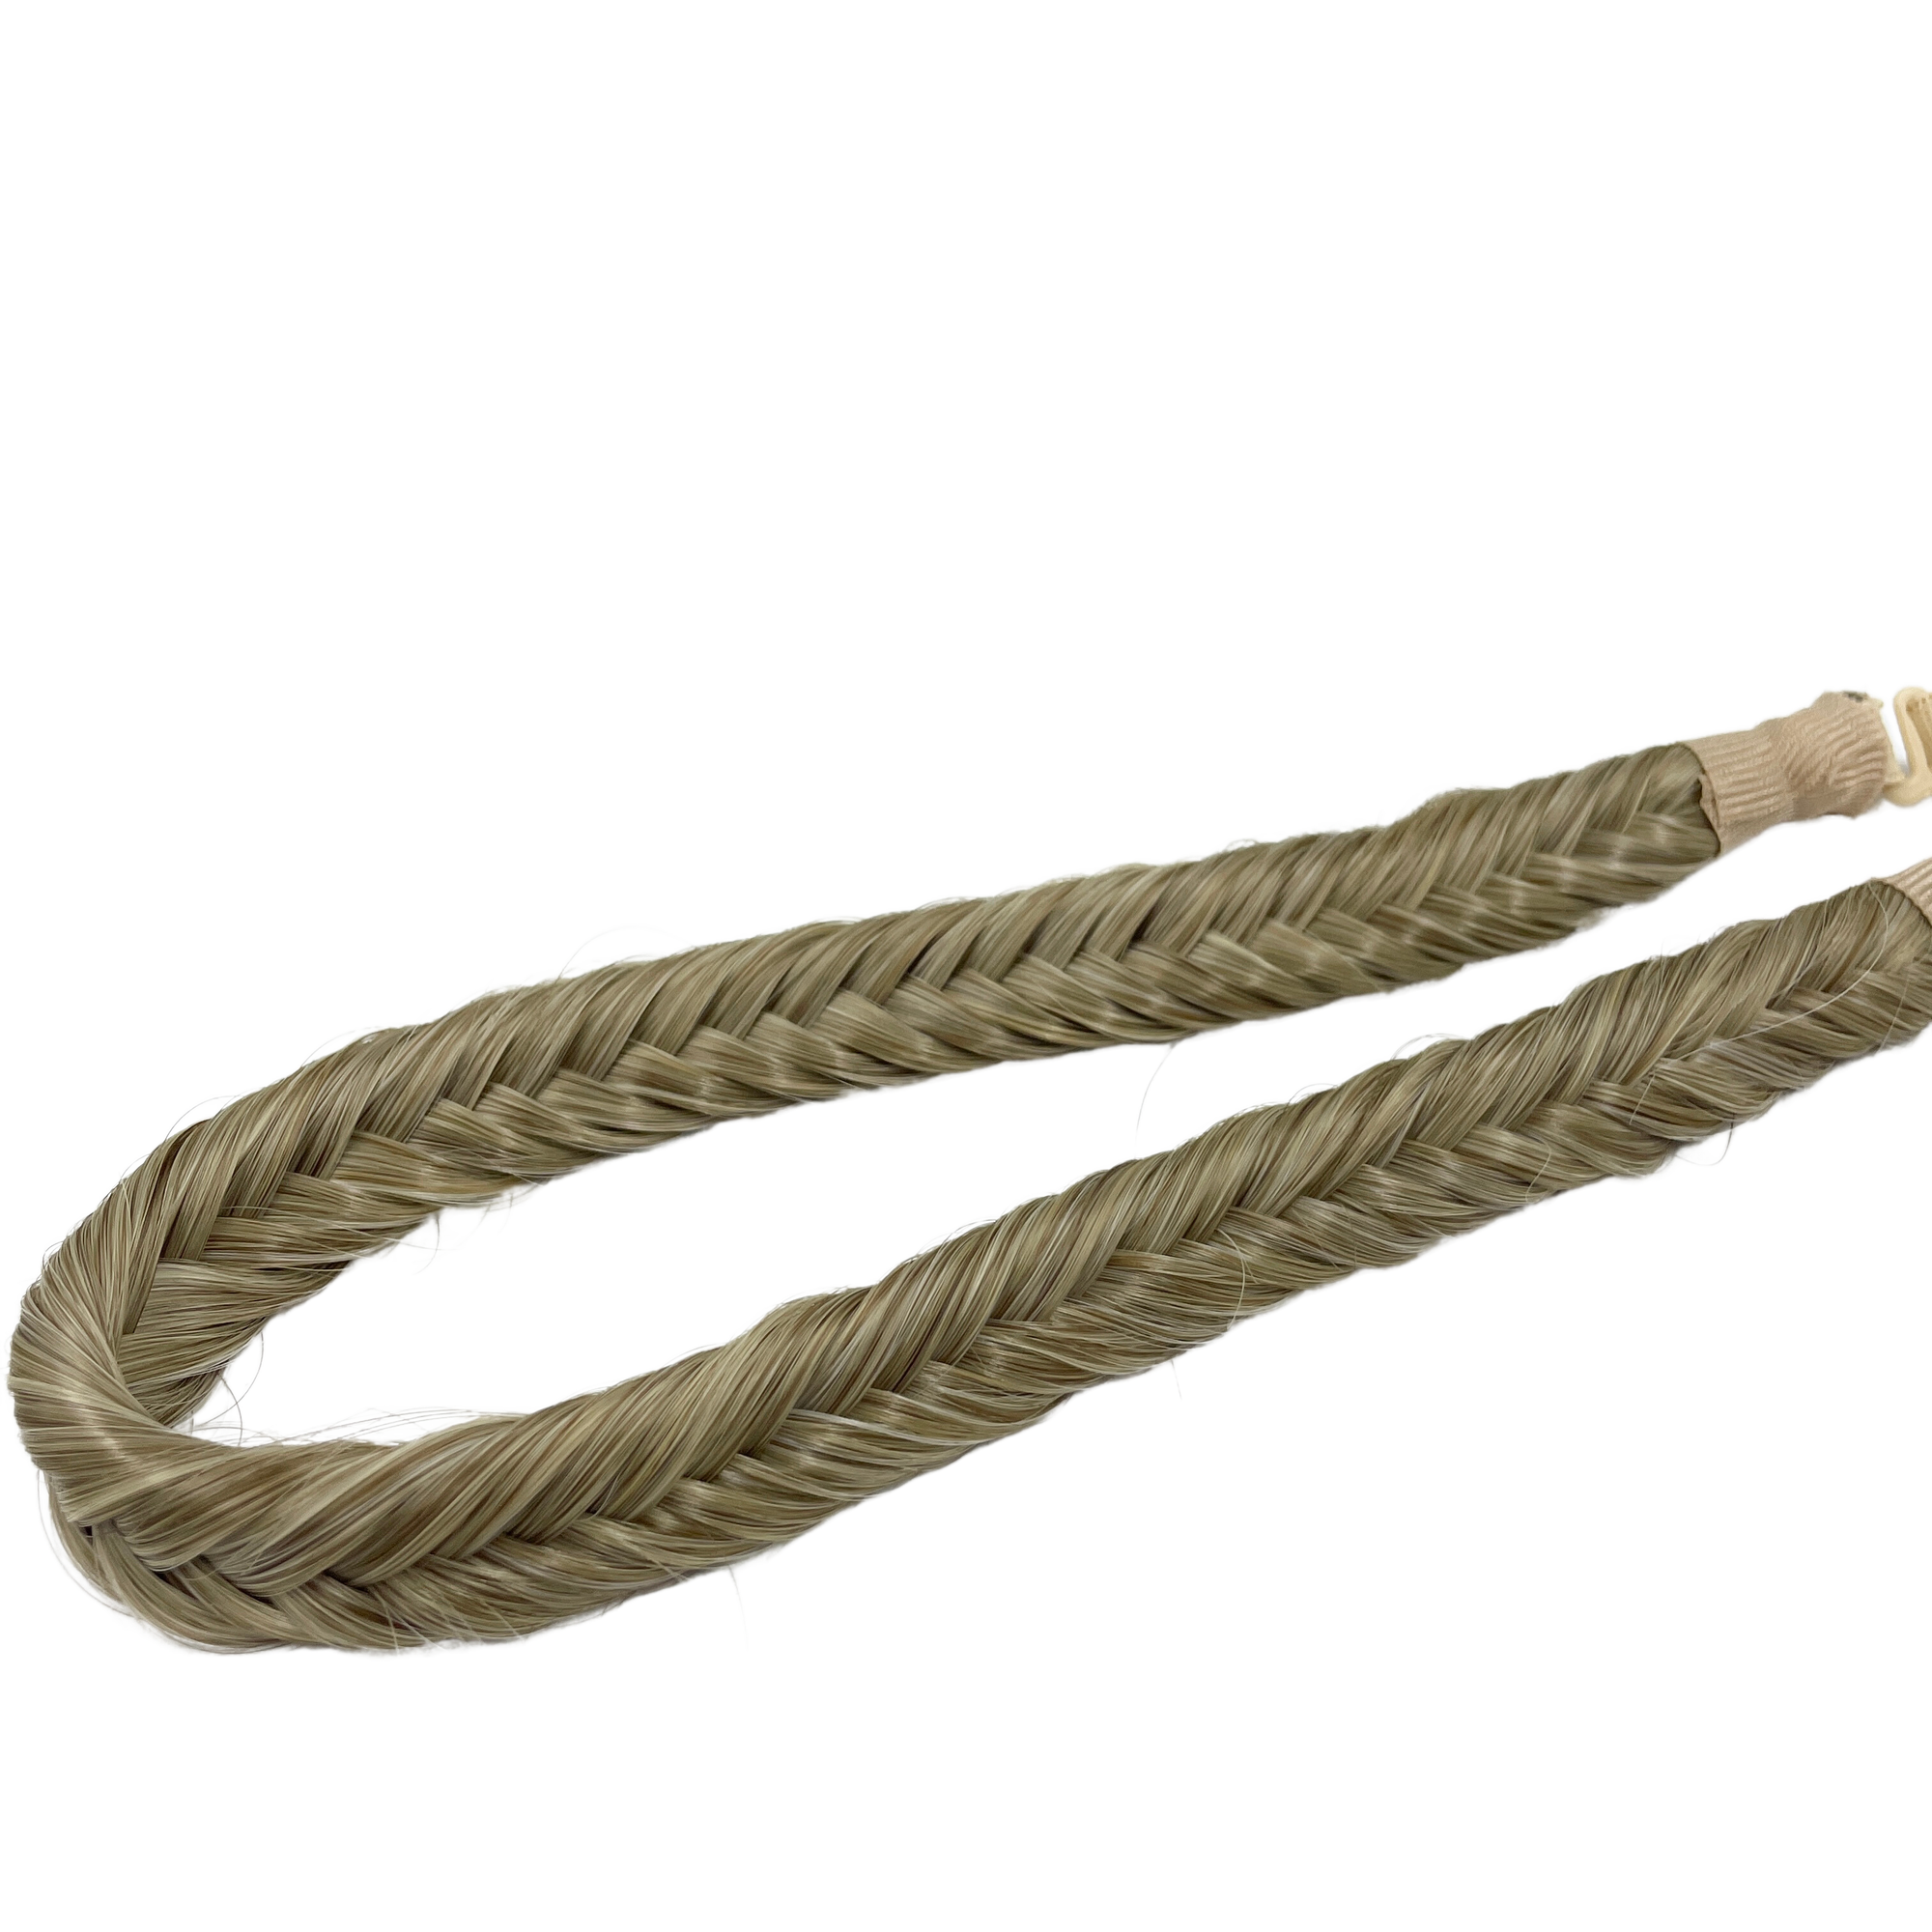 image of hair rehab london plait braid fishtail headband hairband in shade sandy